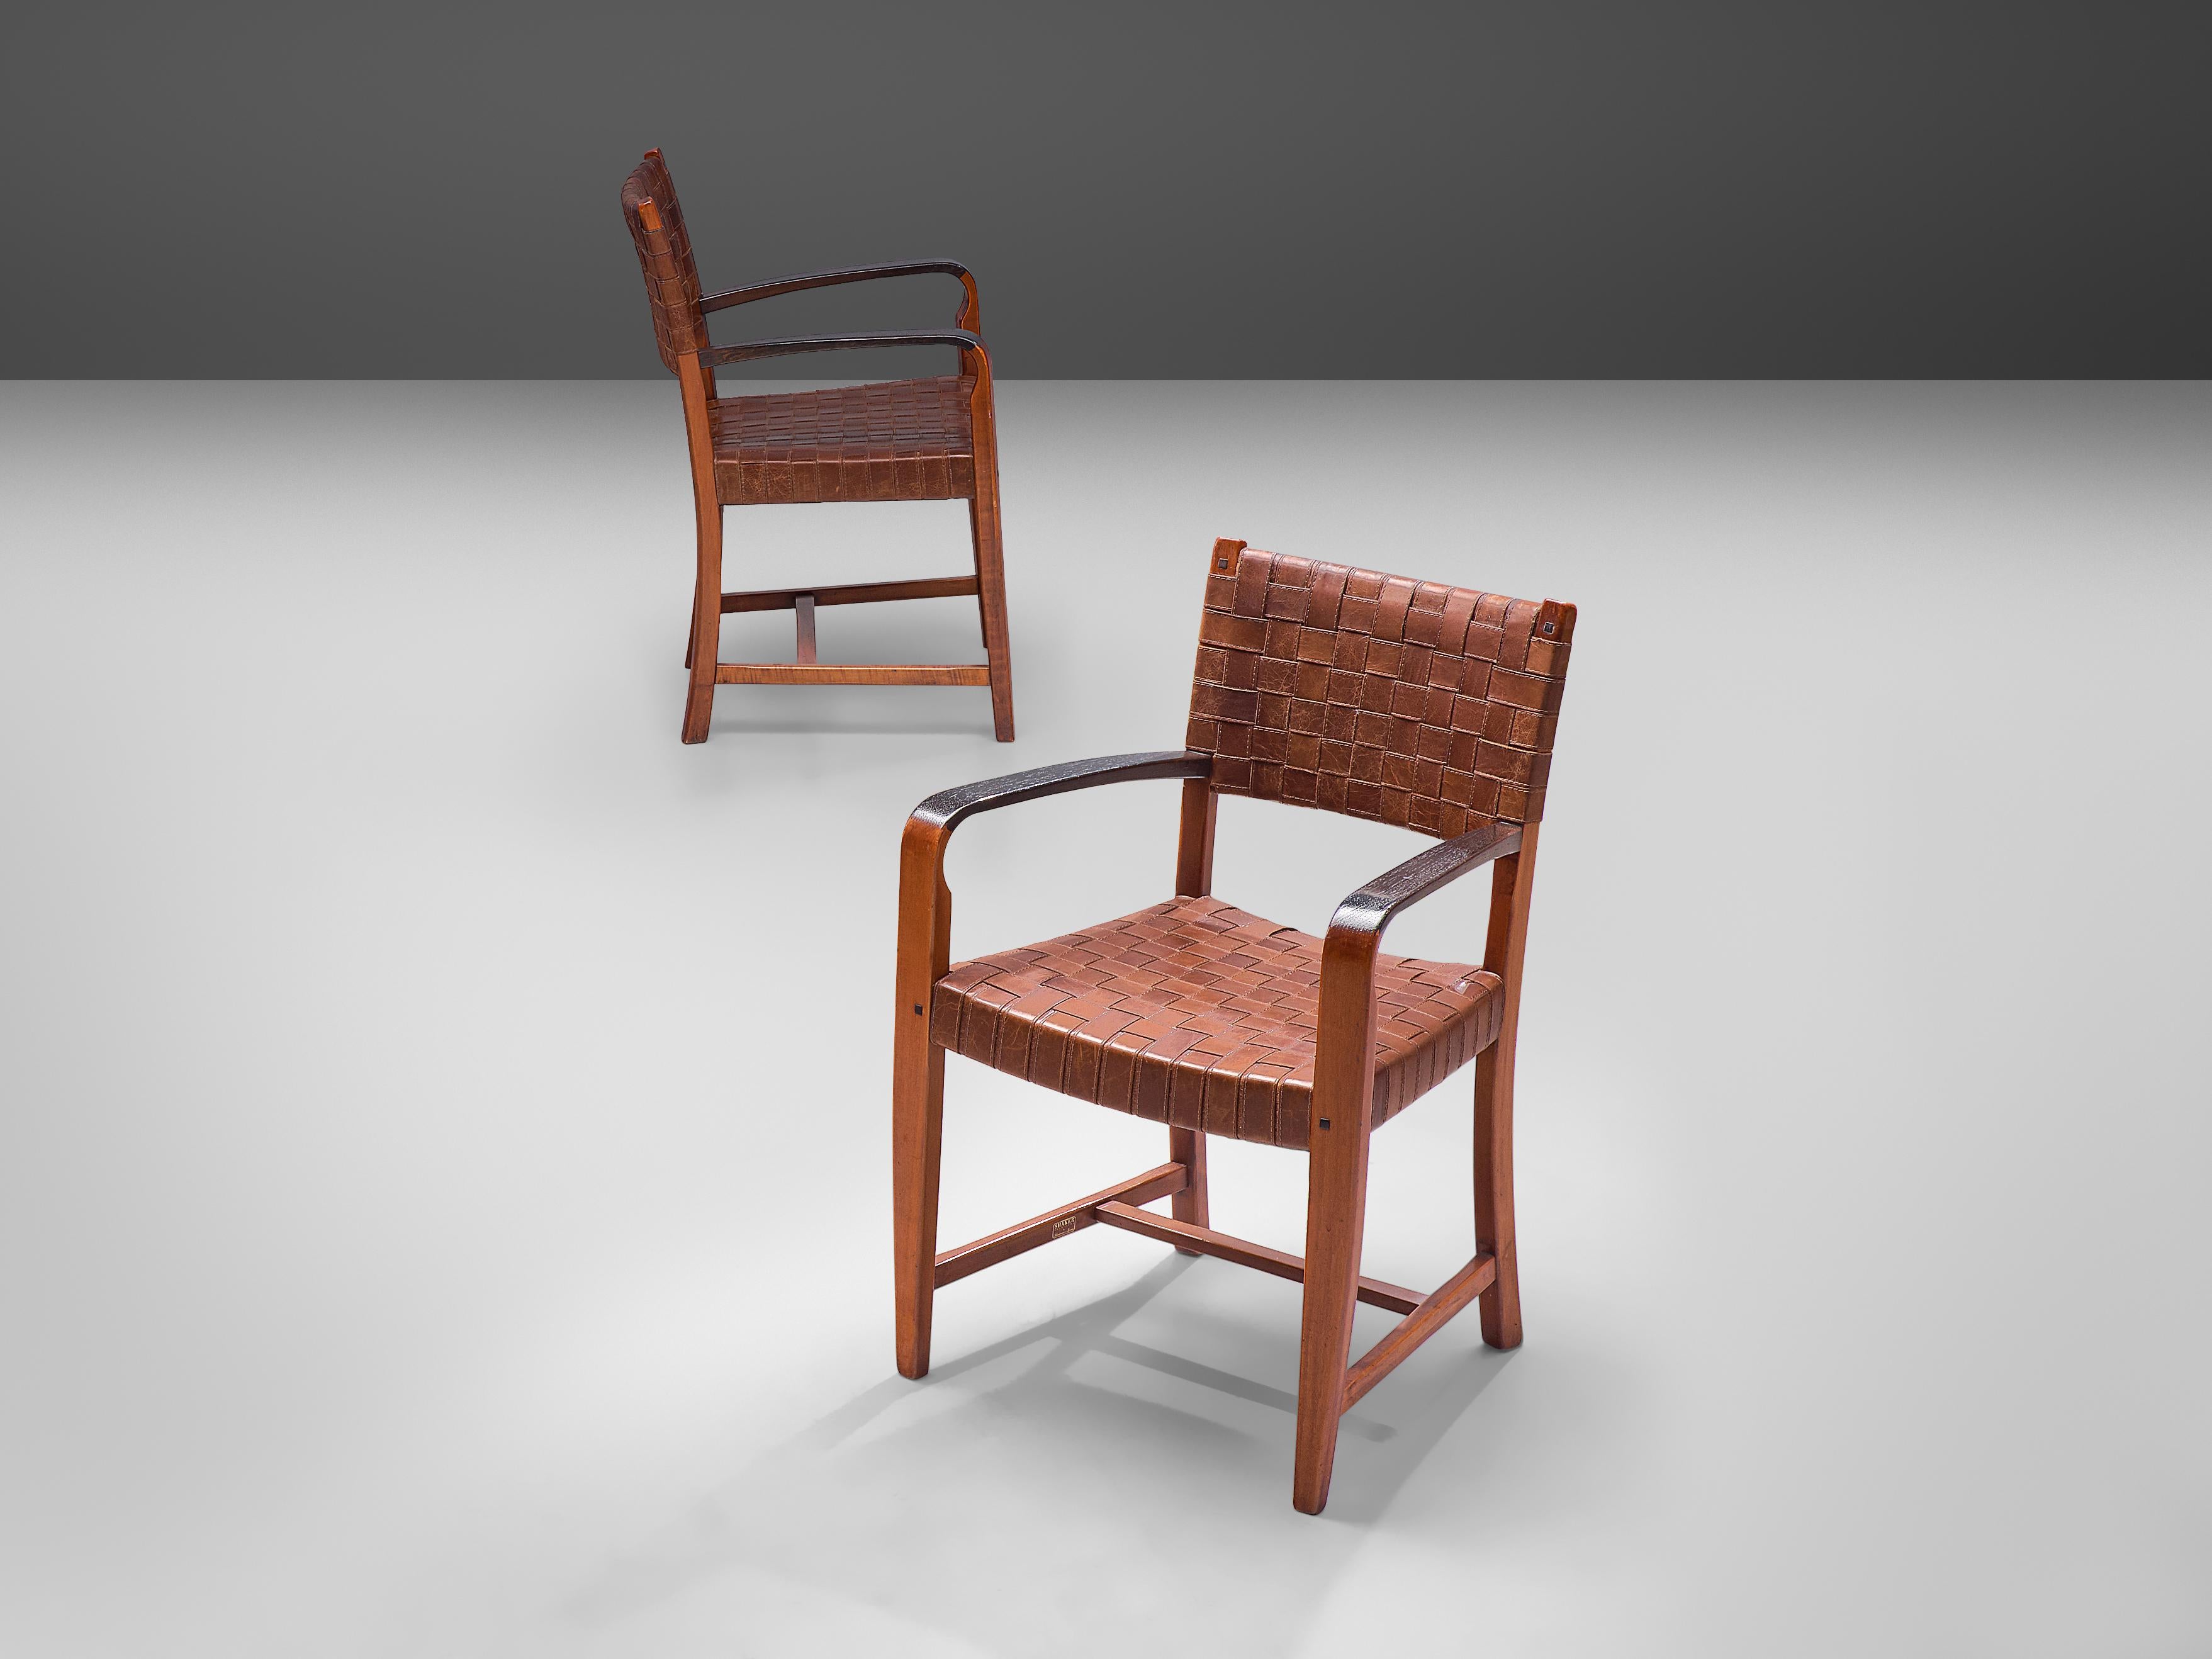 Frits Schuitema pour Shakers Furniture by Schuitema en Zonen, paire de fauteuils modèle 1130, bois teinté, cuir, Belgique, années 1970.

Une belle paire de chaises de salle à manger du milieu du siècle par le designer et fabricant de meubles belge